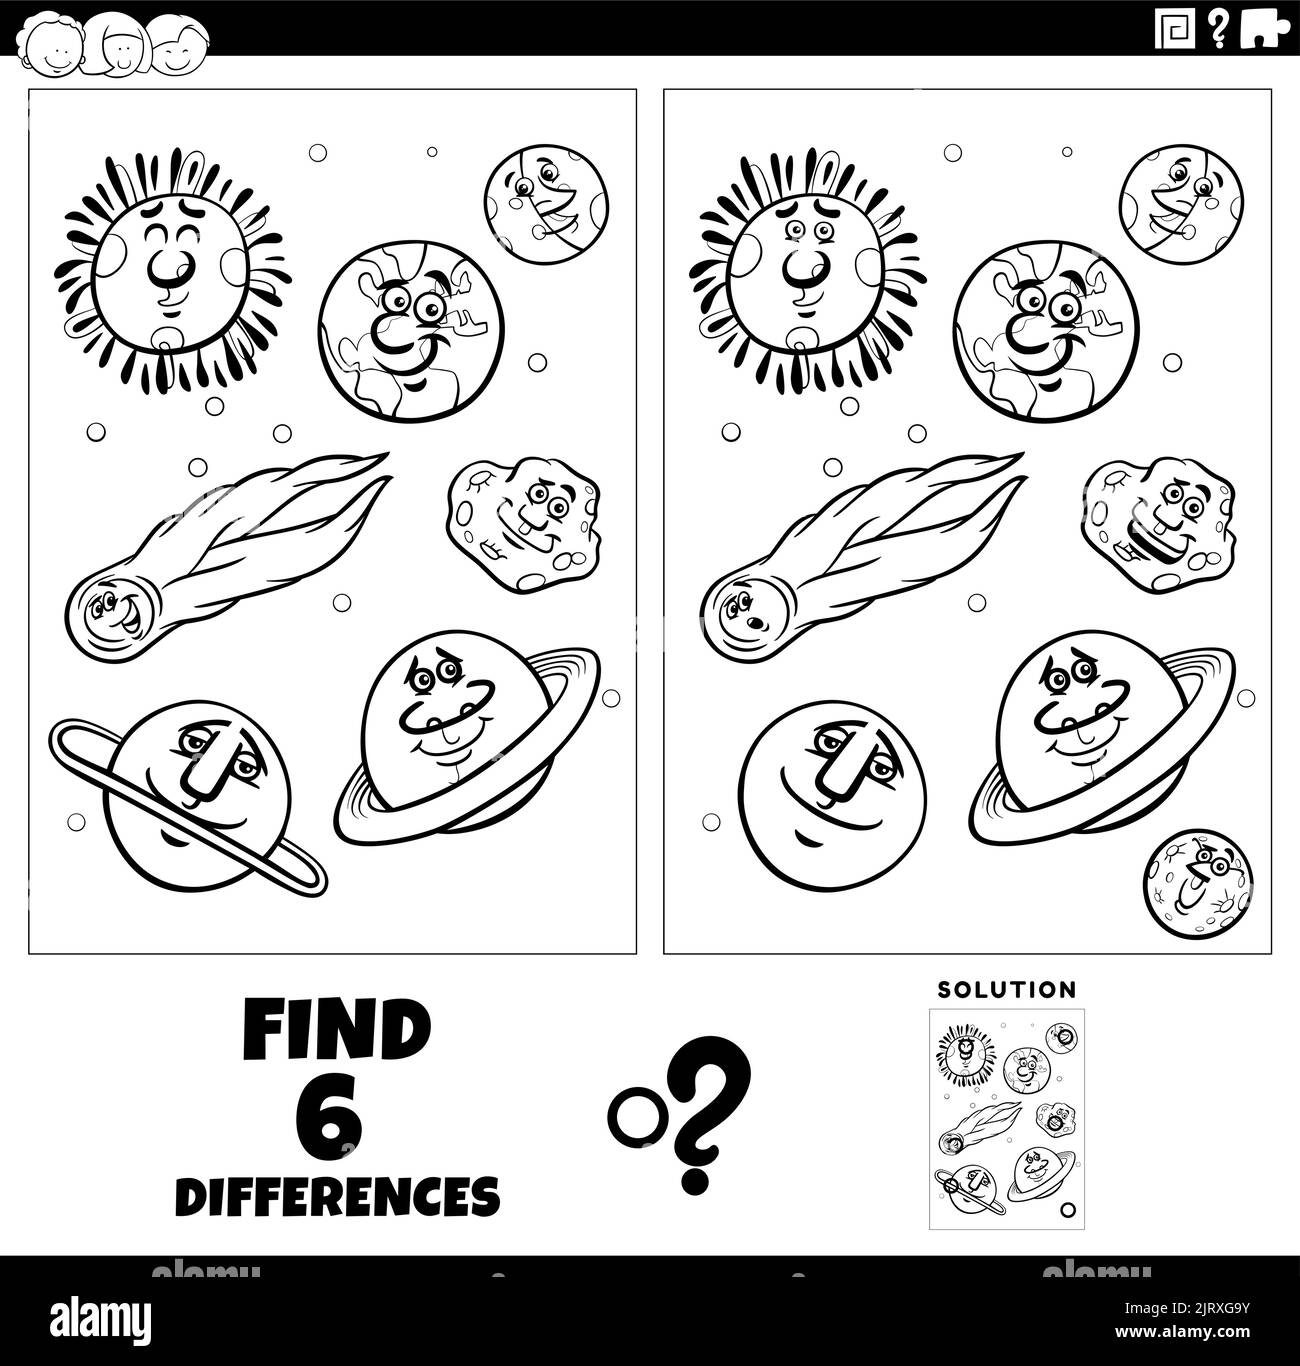 Dessin animé noir et blanc illustration de trouver les différences entre les images jeu éducatif avec des planètes et orbes caractères coloriage page Illustration de Vecteur